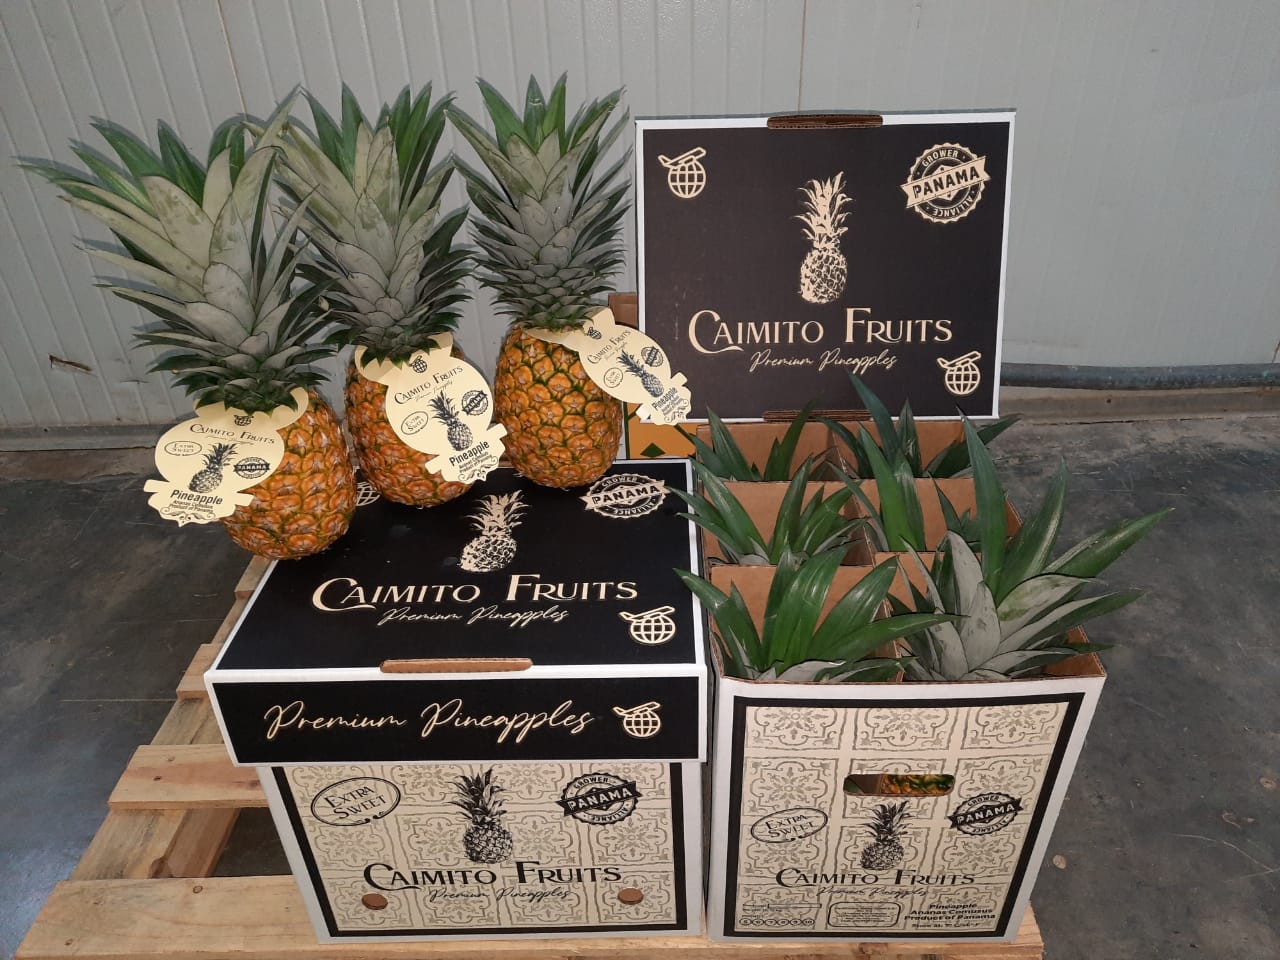 Caimito Fruits Boxes stacked